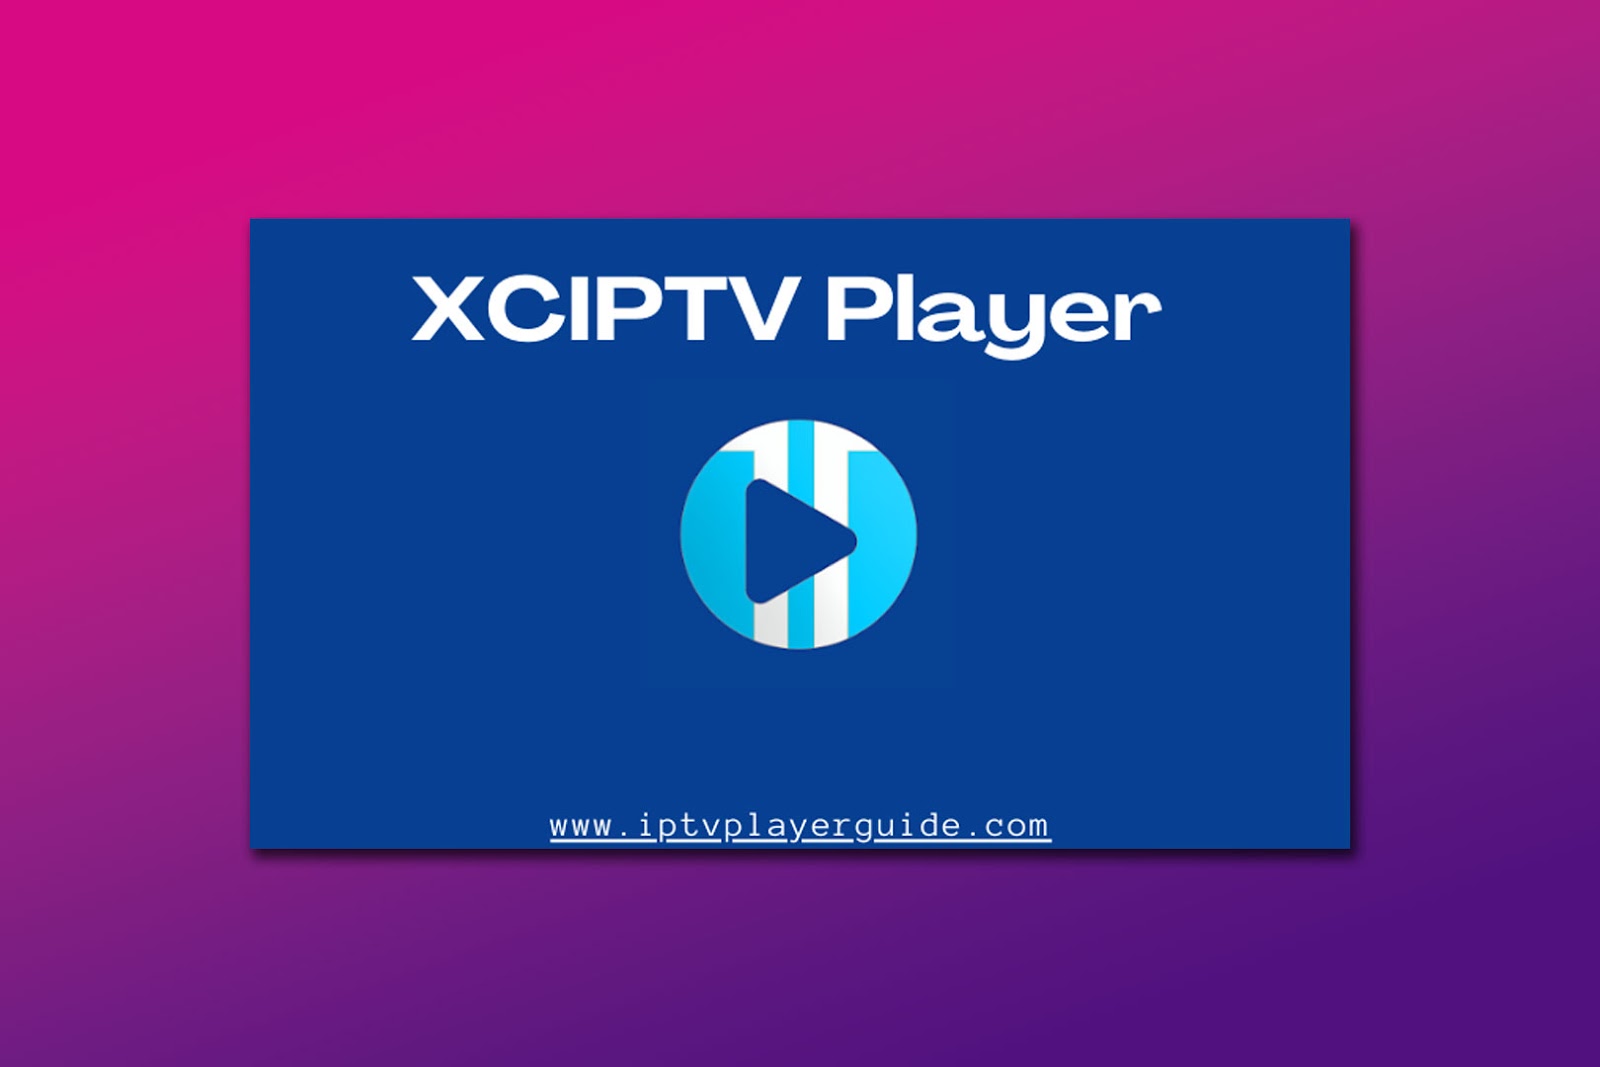 XCIPTV Player Best App For Apple TV